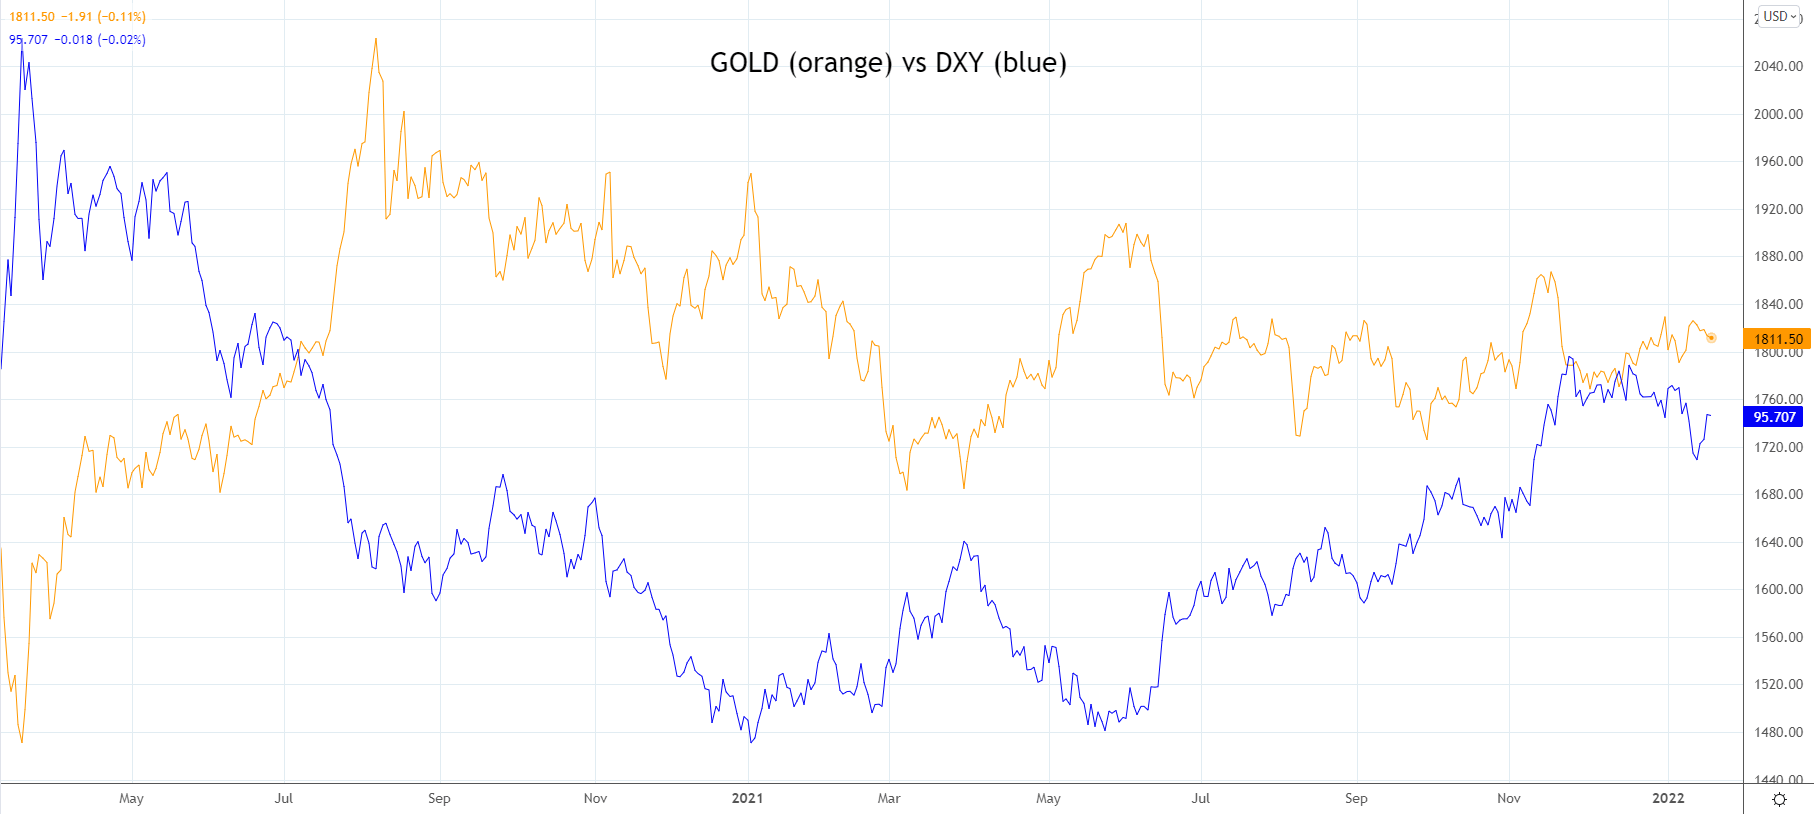 Gold vs DXY jan 19